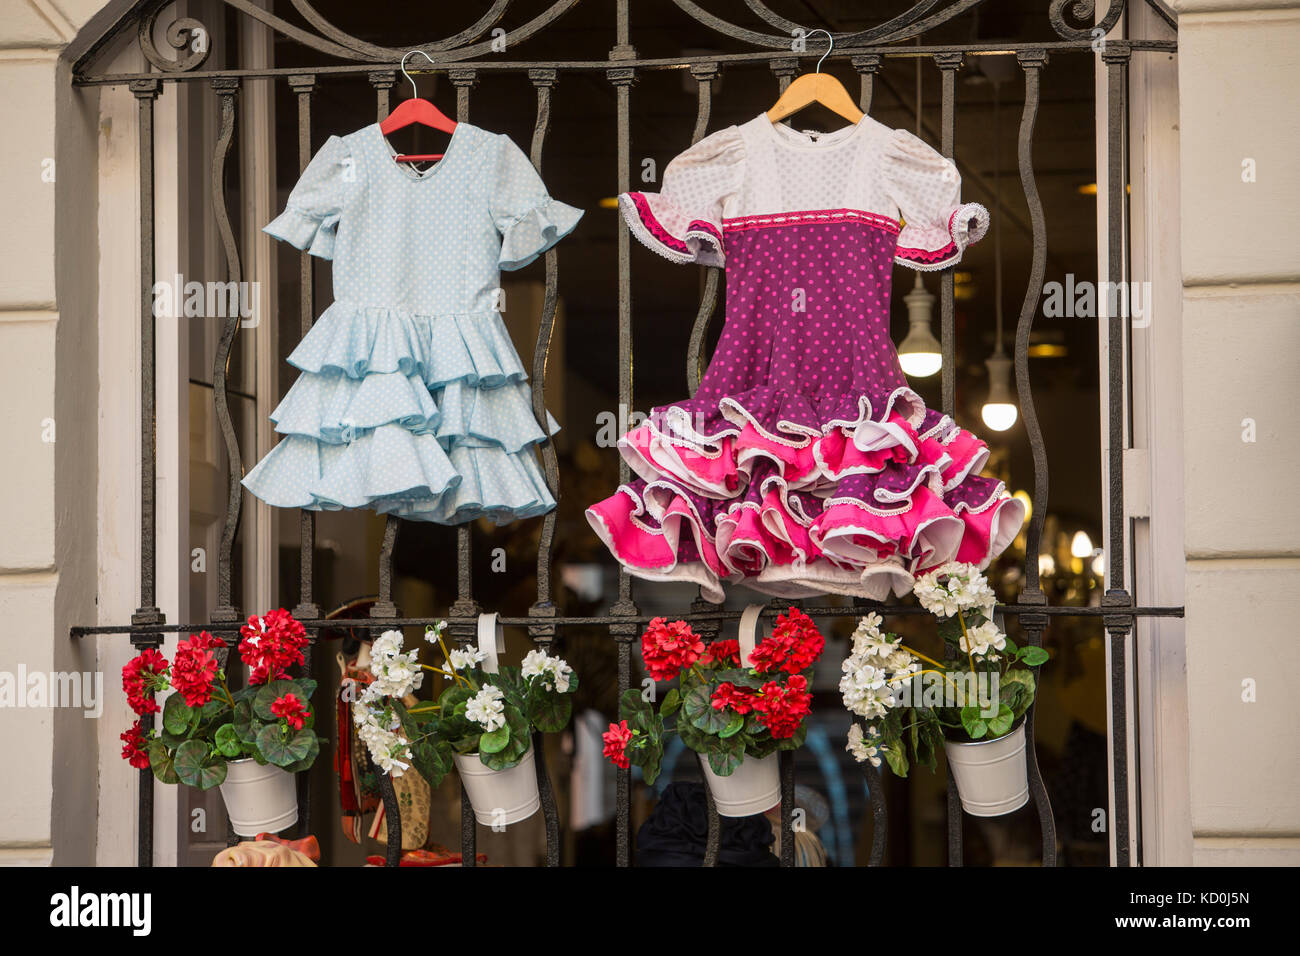 Robes de flamenco accroché sur la porte, Valencia, Spain, Europe Banque D'Images